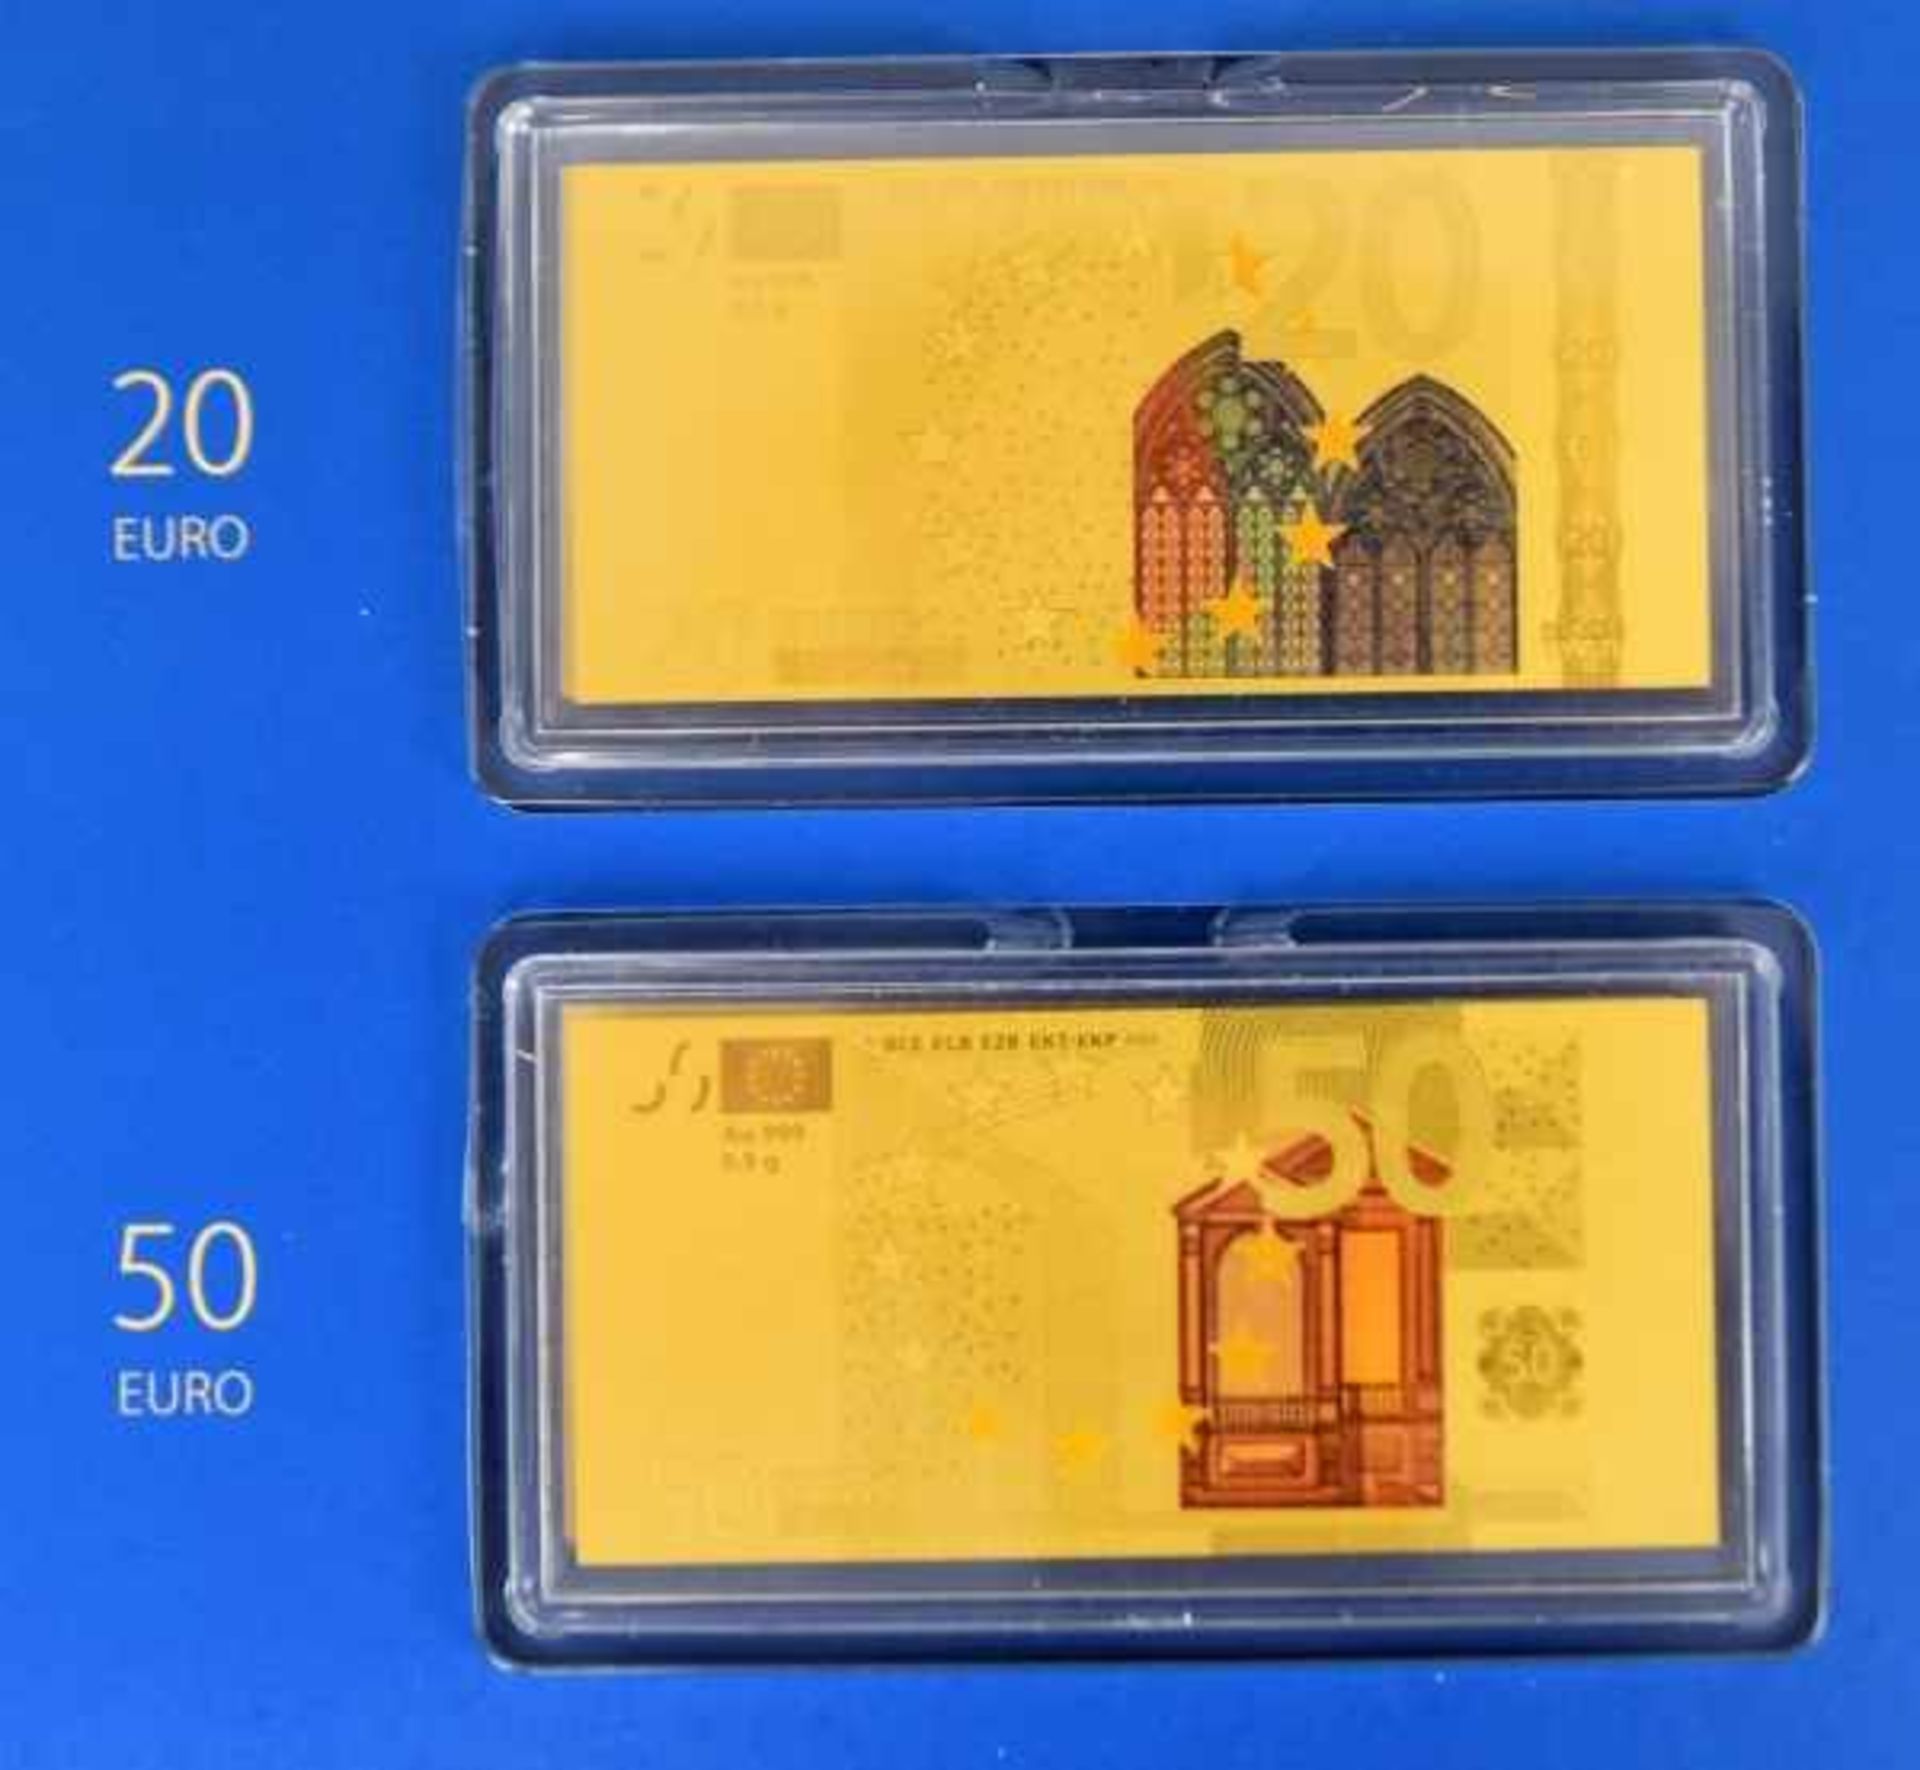 7 GOLDMÜNZEN im Banknotenformat, Set "Die Euro- Banknoten" (komplett), Gold 999/1000, PP, 90x43mm, - Bild 3 aus 3